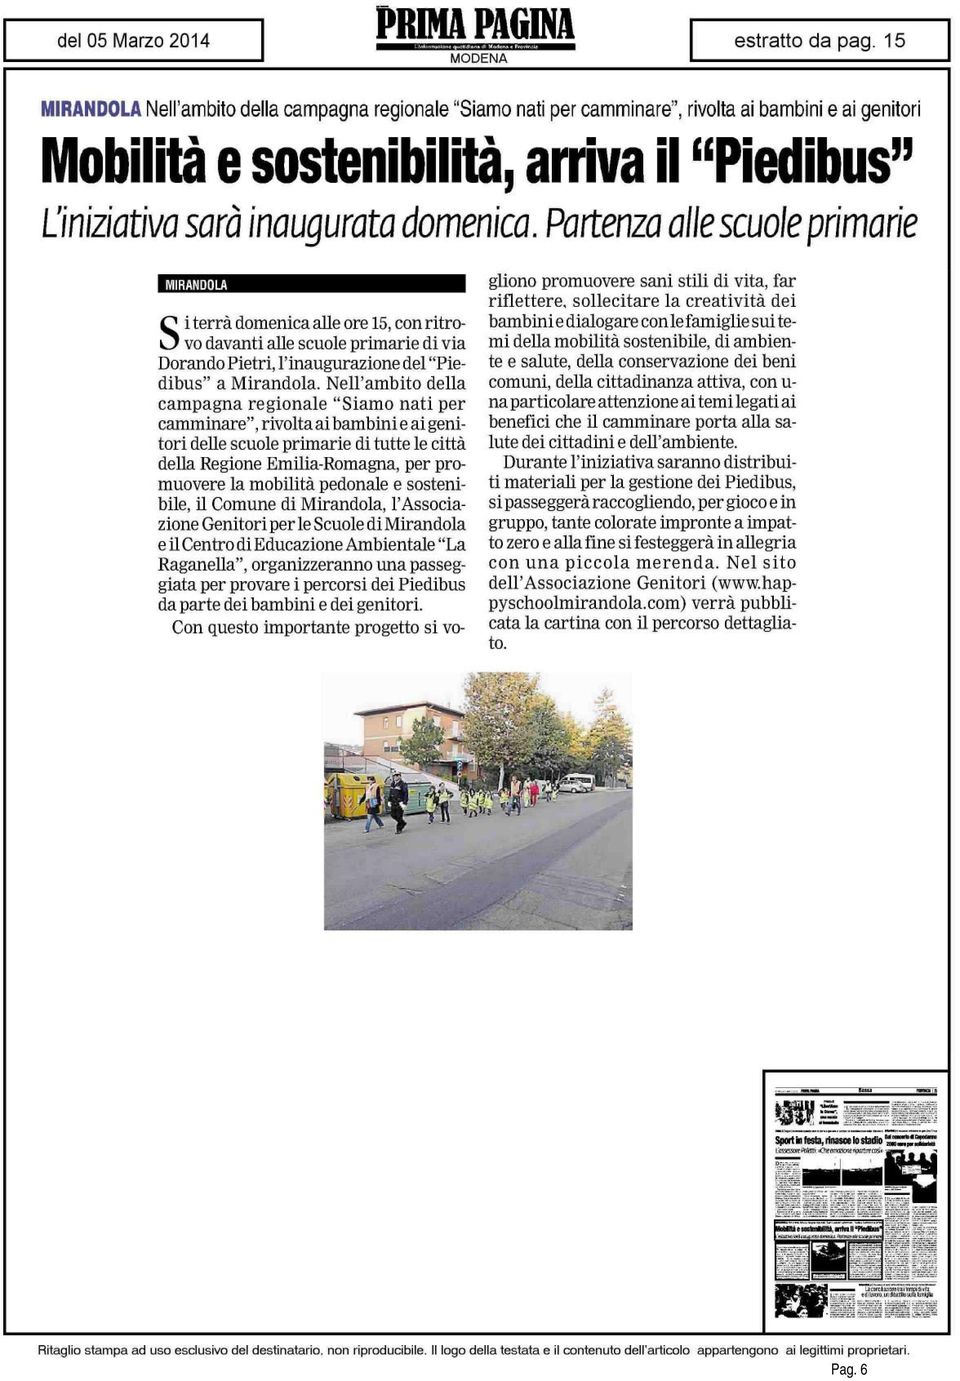 Nell'ambito della campagna regionale "Siamo nati per camminare", rivolta ai bambini e ai genitori delle scuole primarie di tutte le città della Regione Emilia-Romagna, per promuovere la mobilità